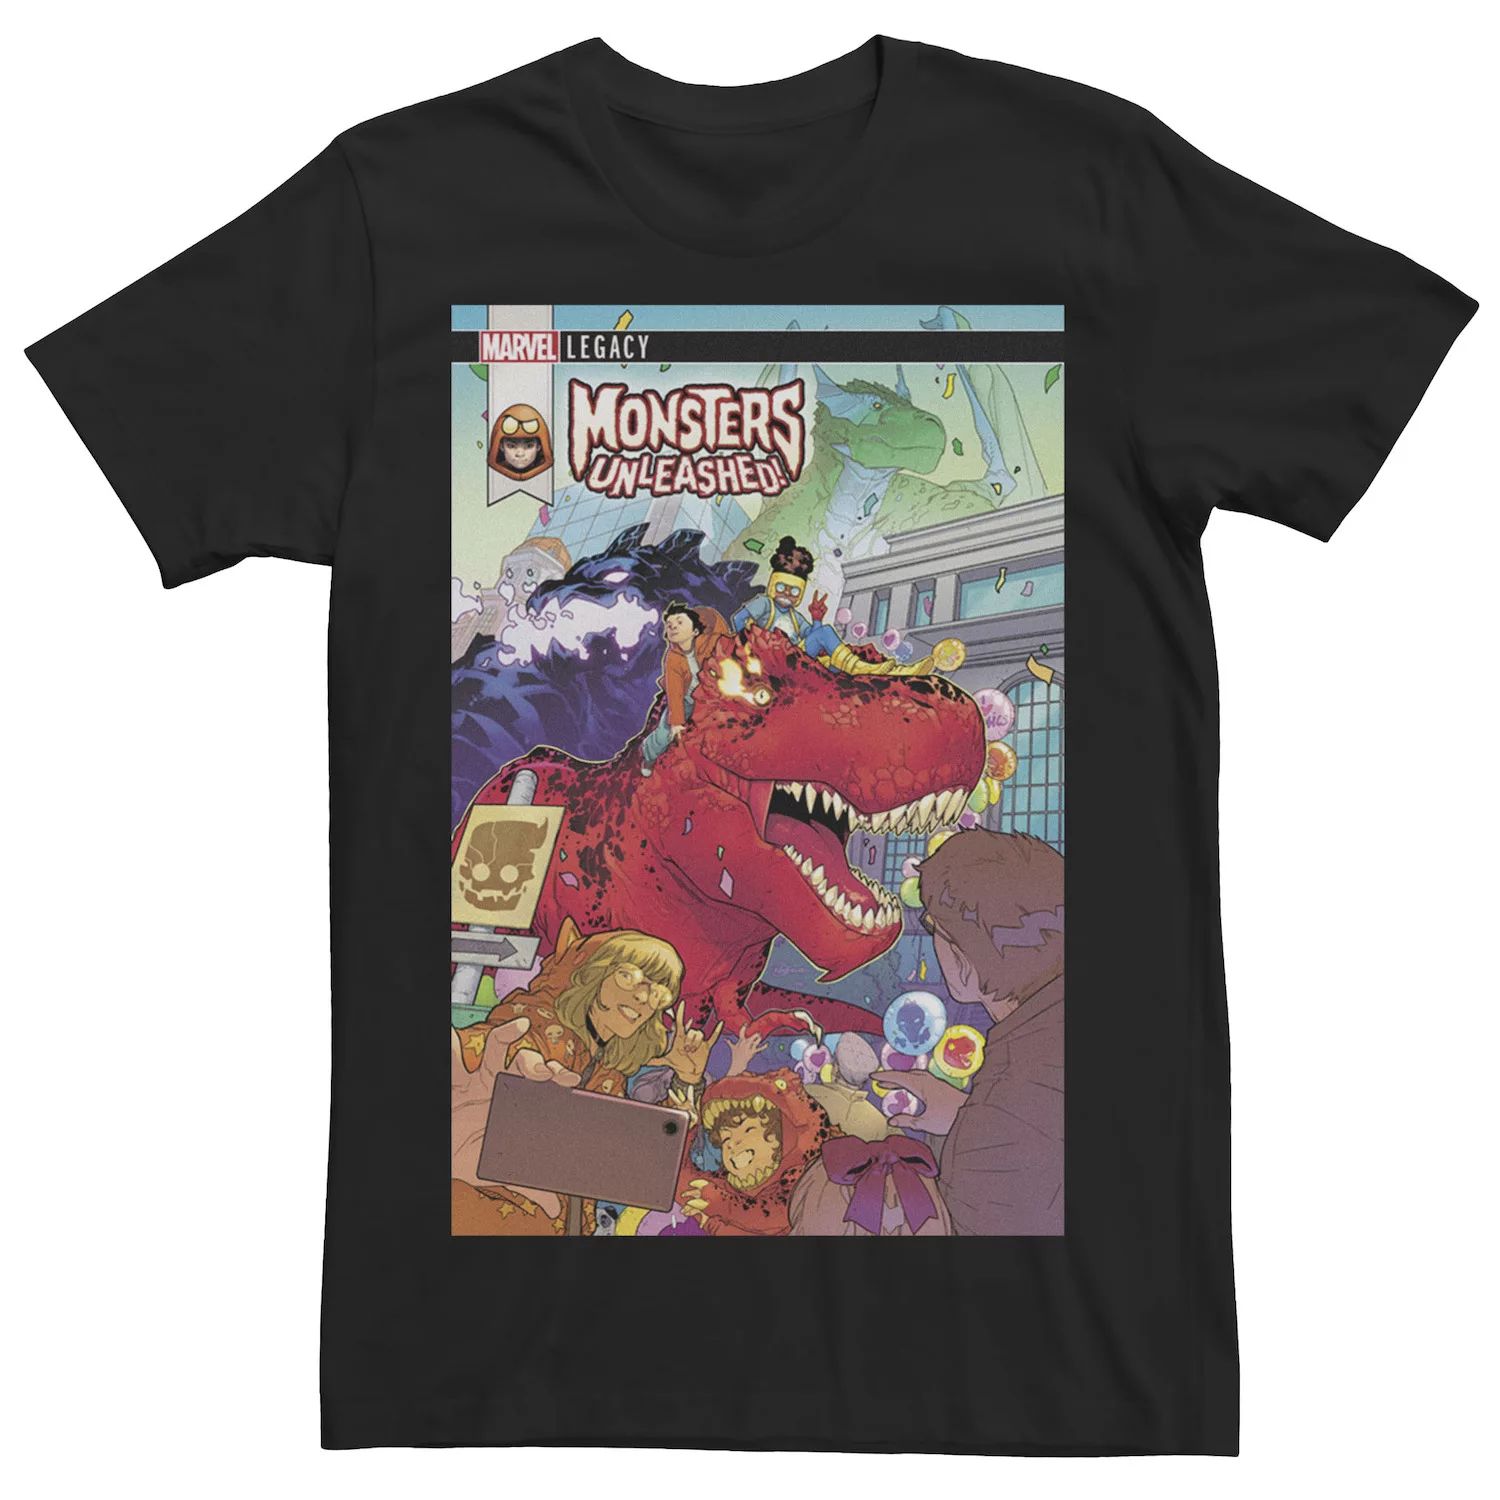 Мужская футболка с обложкой комикса Monsters Unleashed Marvel мужская черная футболка с обложкой комикса marvel prince namor черный